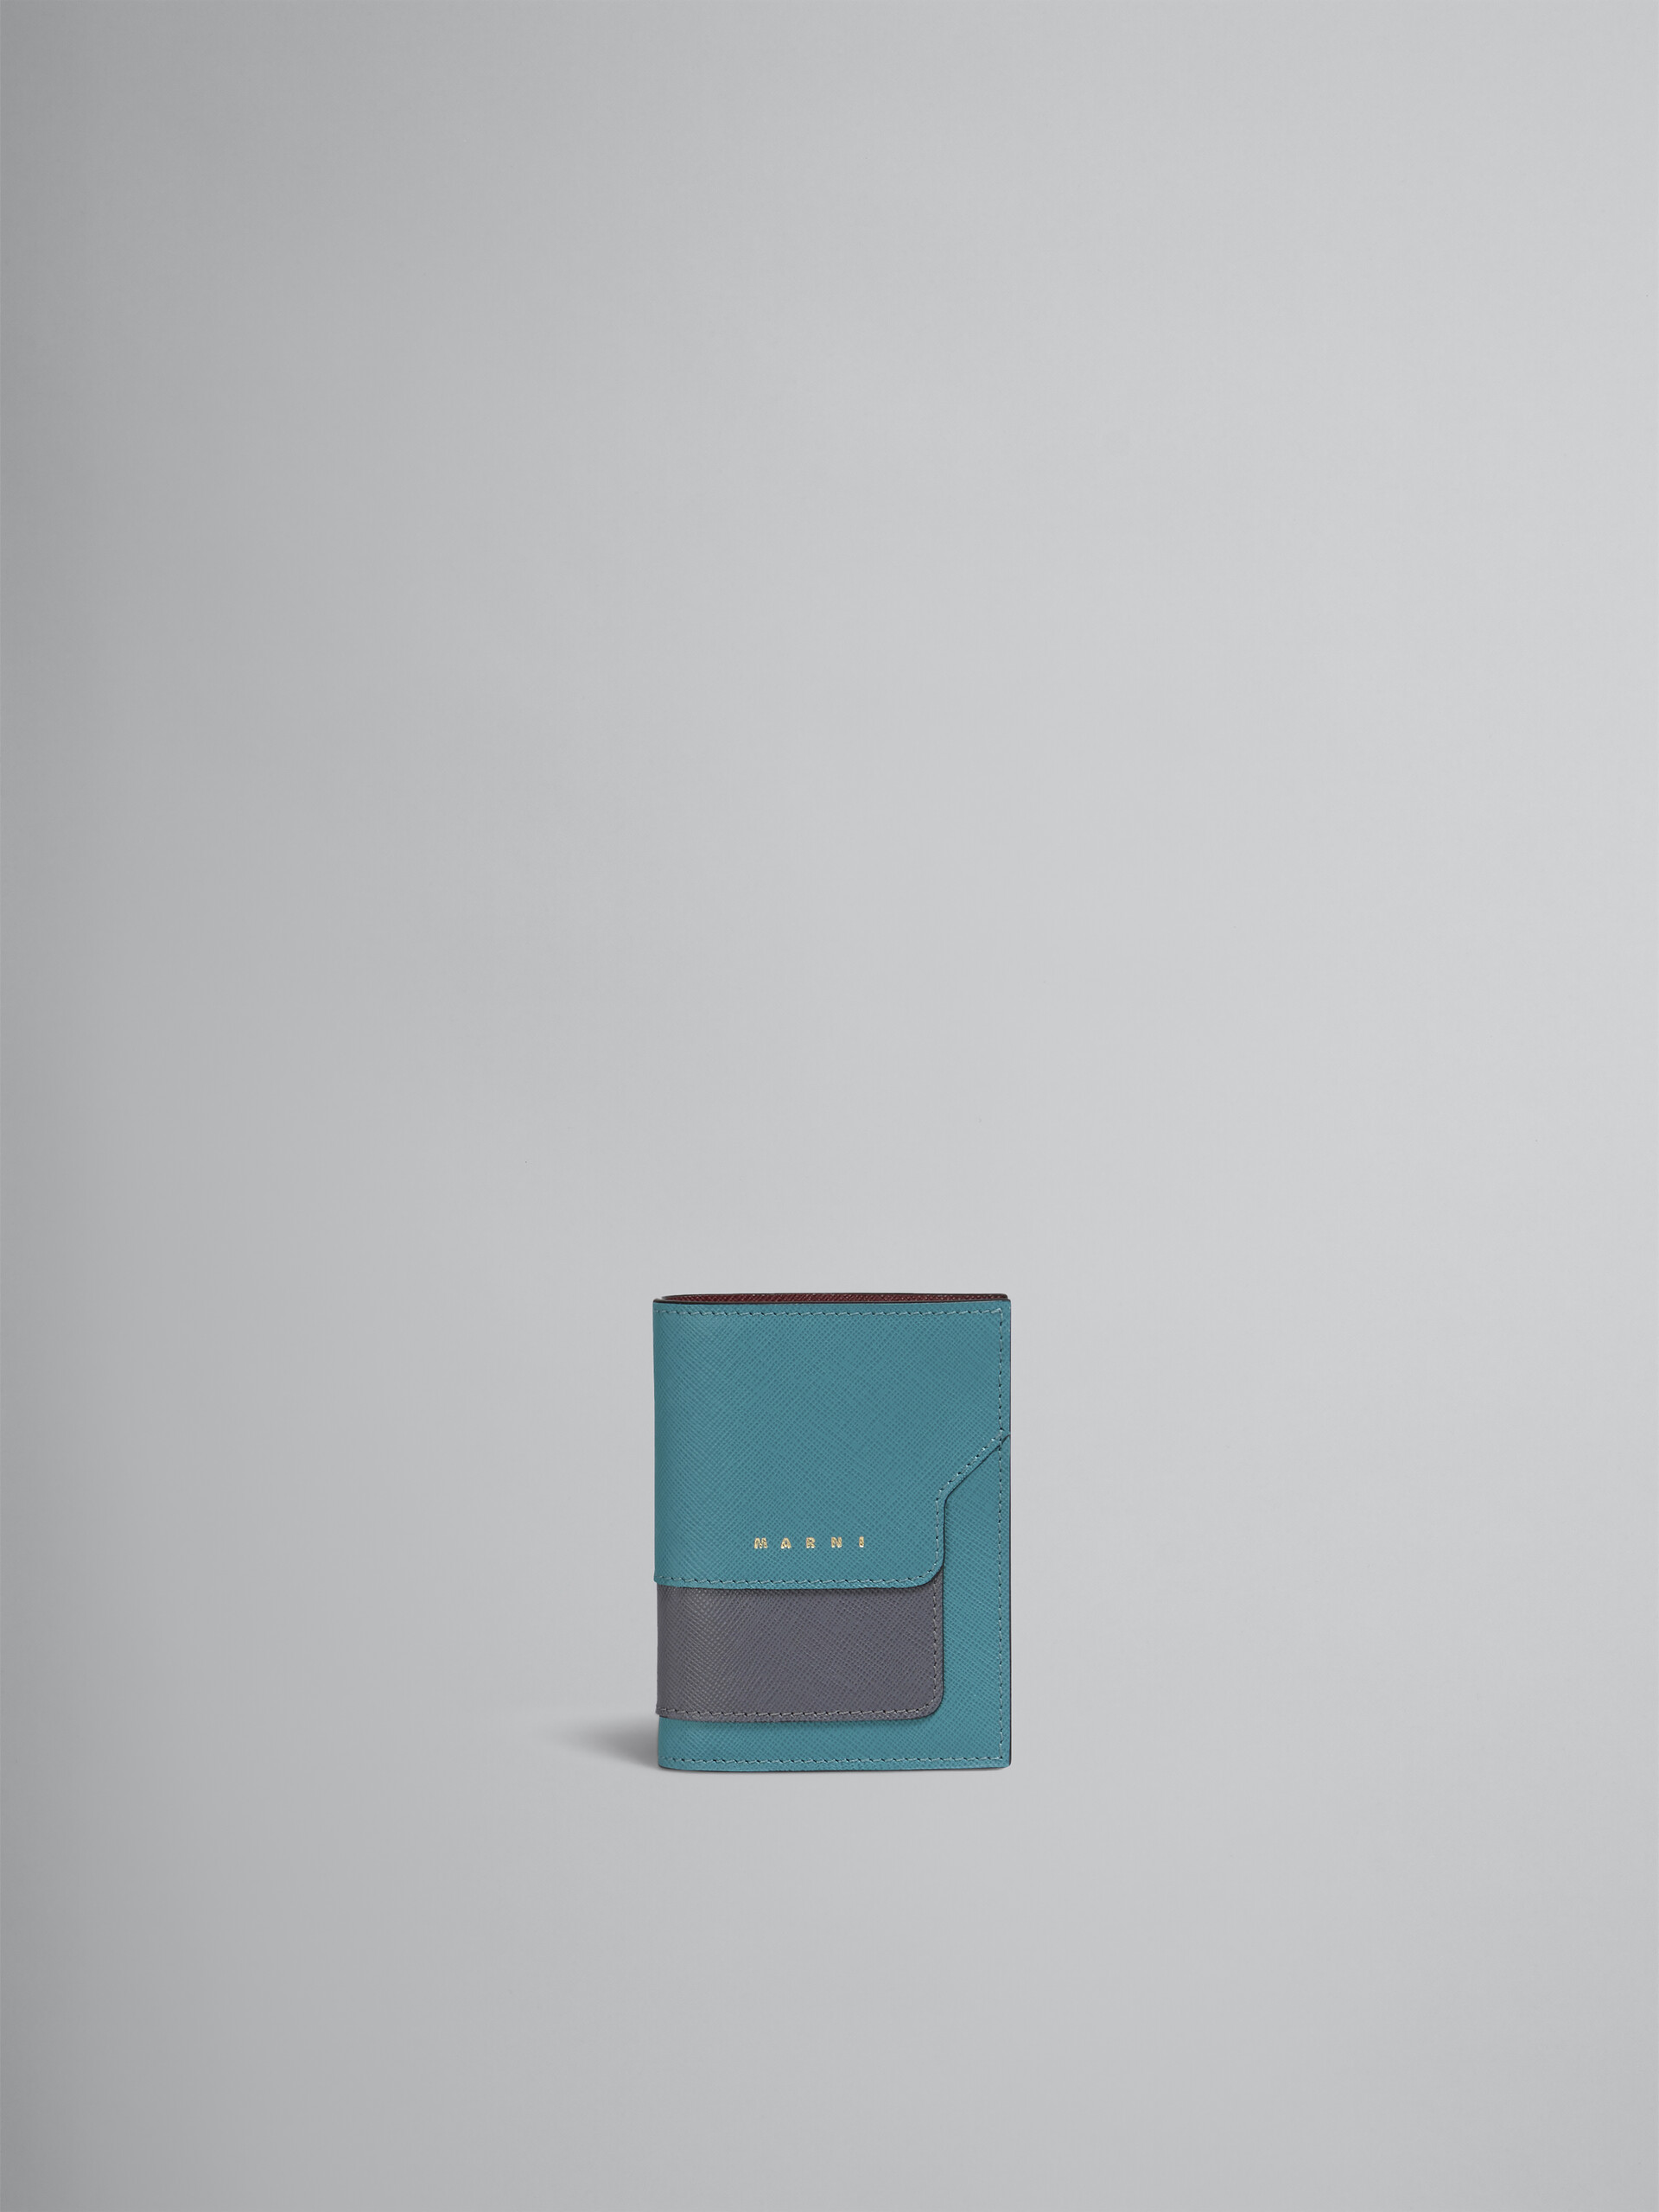 ブルー グレー レッド サフィアーノレザー製 二つ折りウォレット - 財布 - Image 1